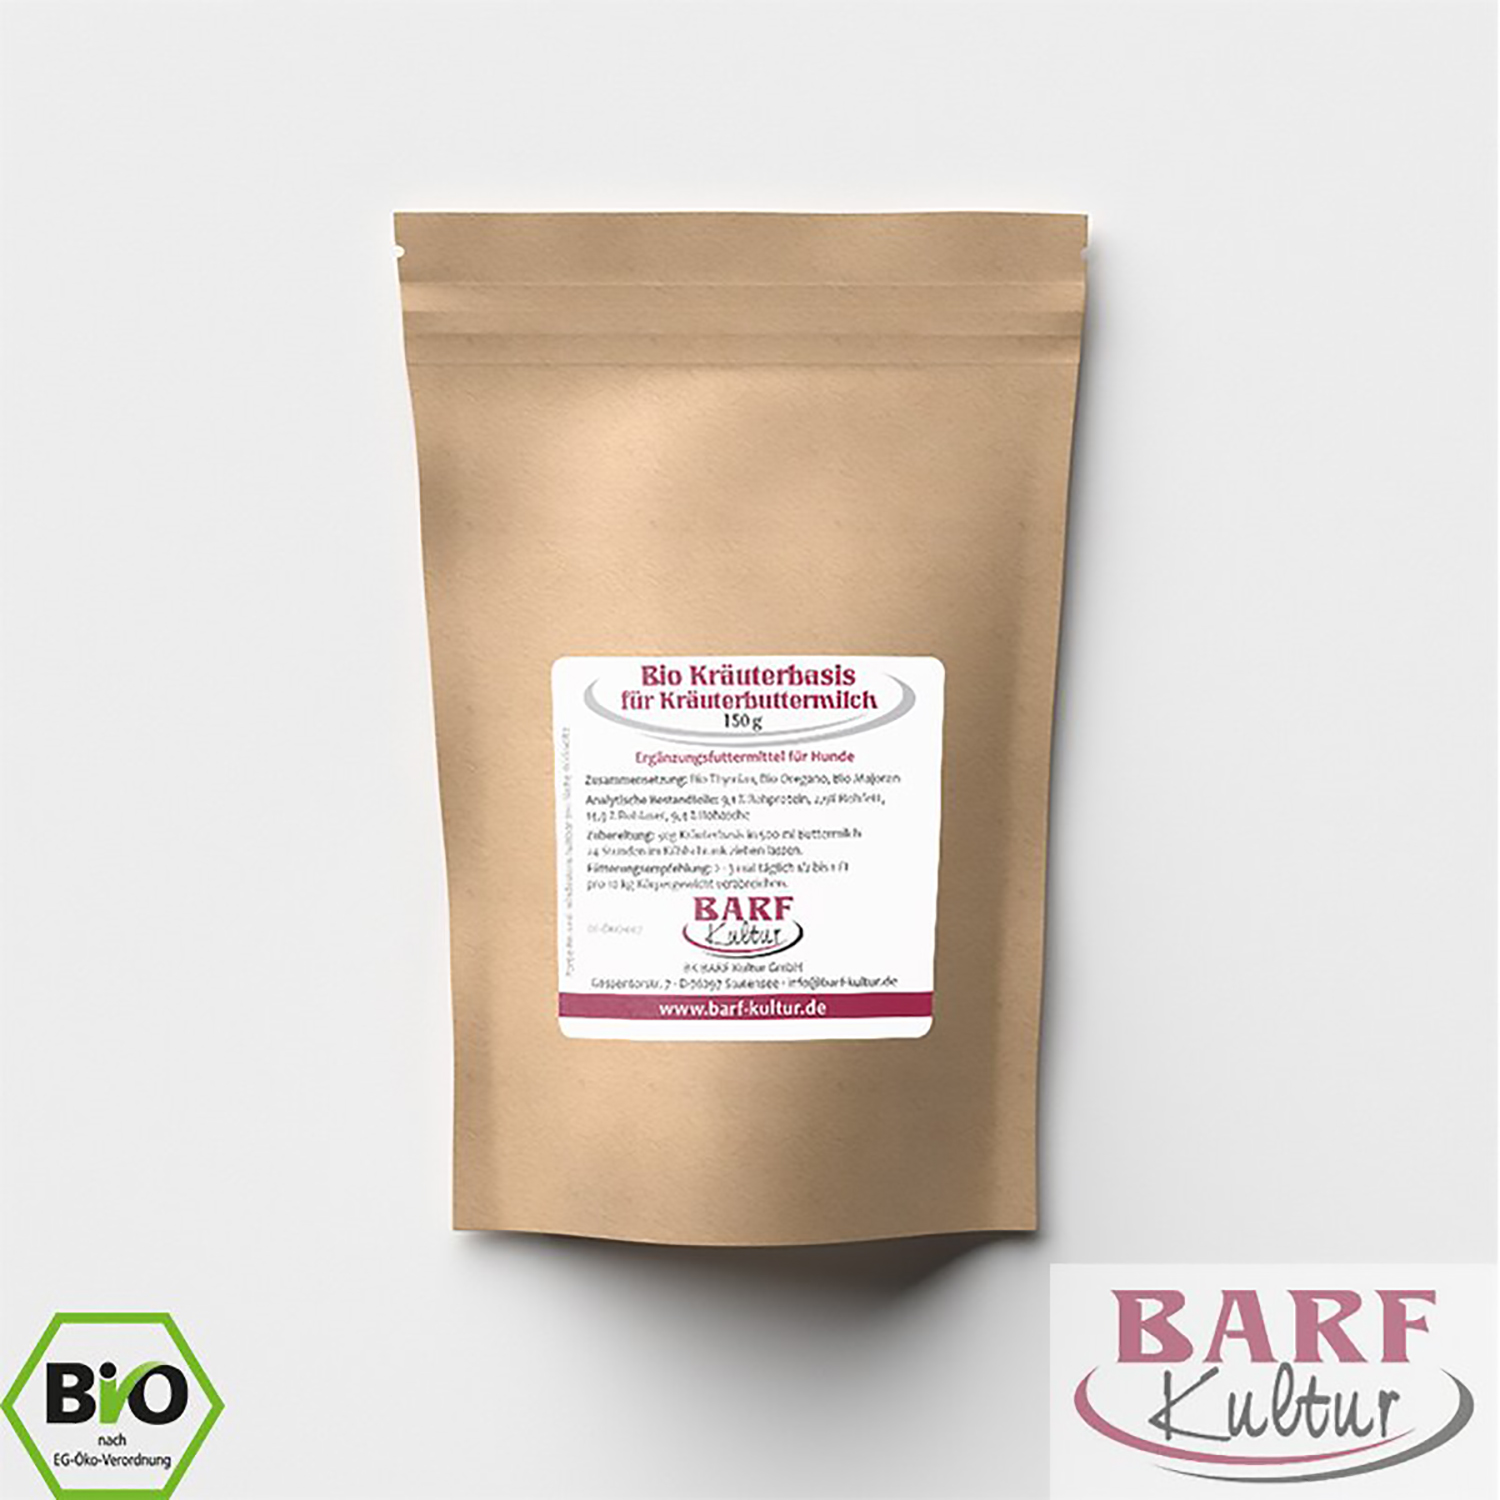 Bio-Kräuterbasis für Kräuterbuttermilch von Barf Kultur – 150g